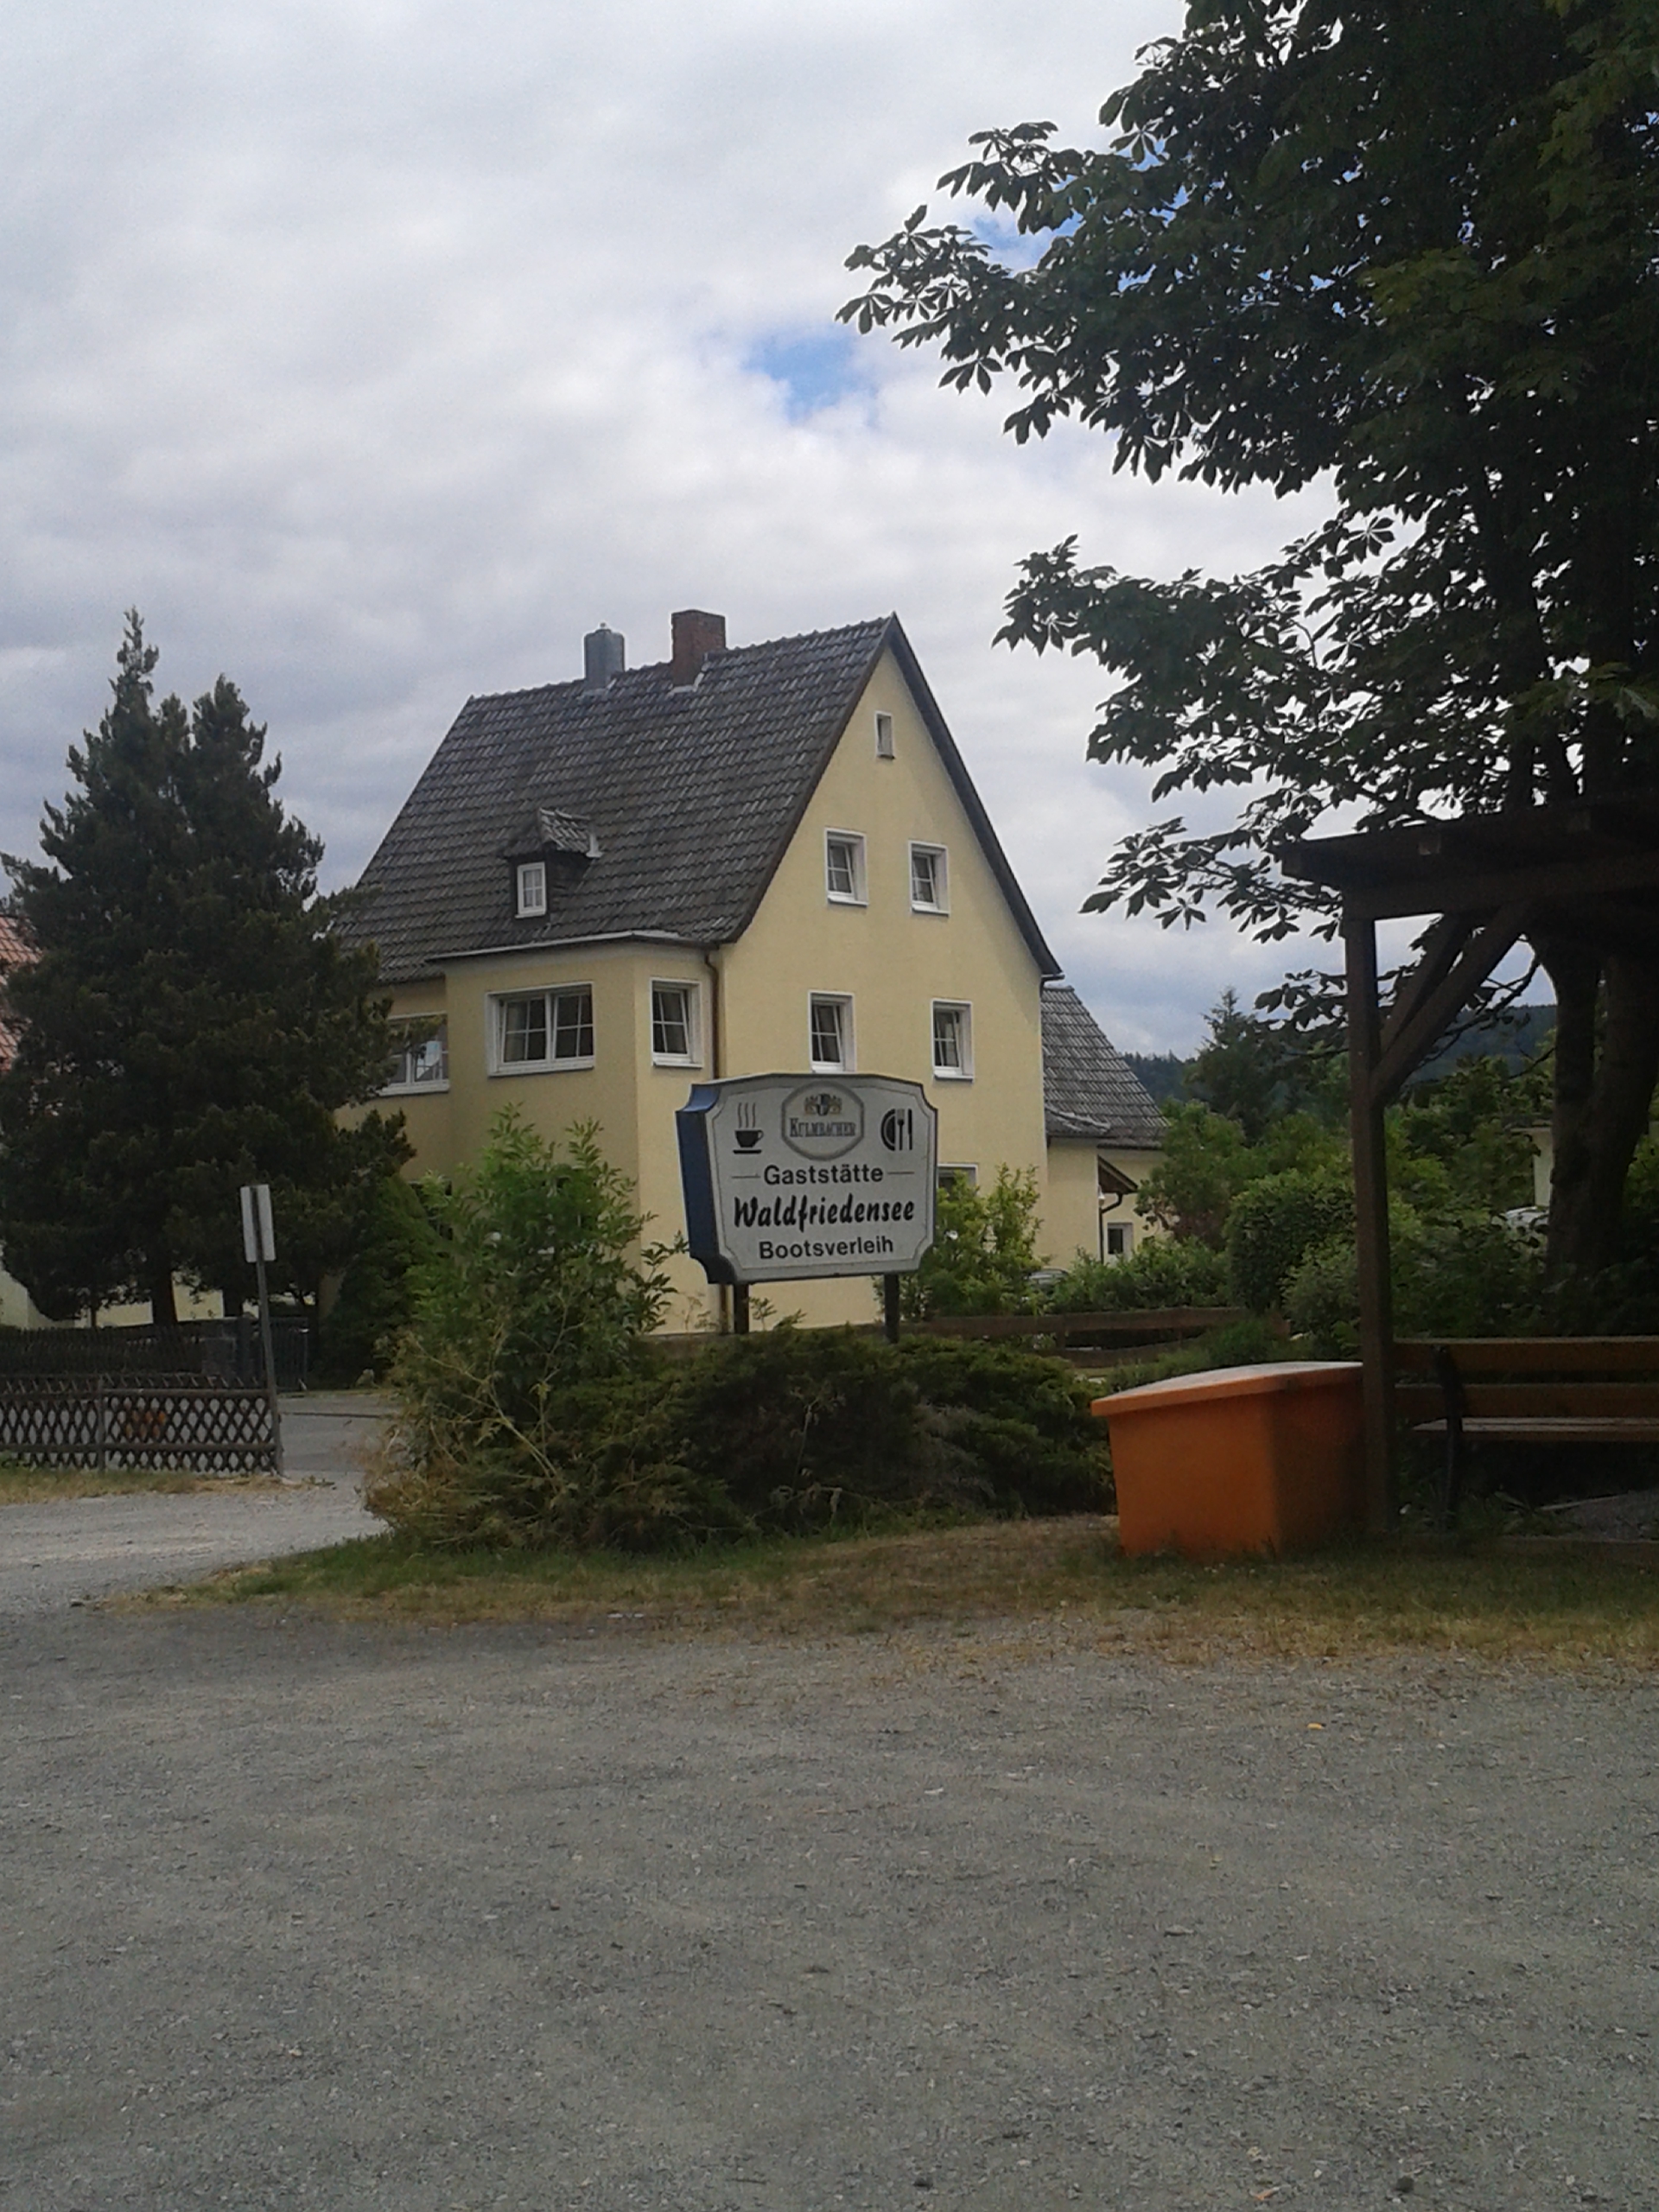 Bild 1 Gasthaus Waldfriedensee in Neustadt b.Coburg